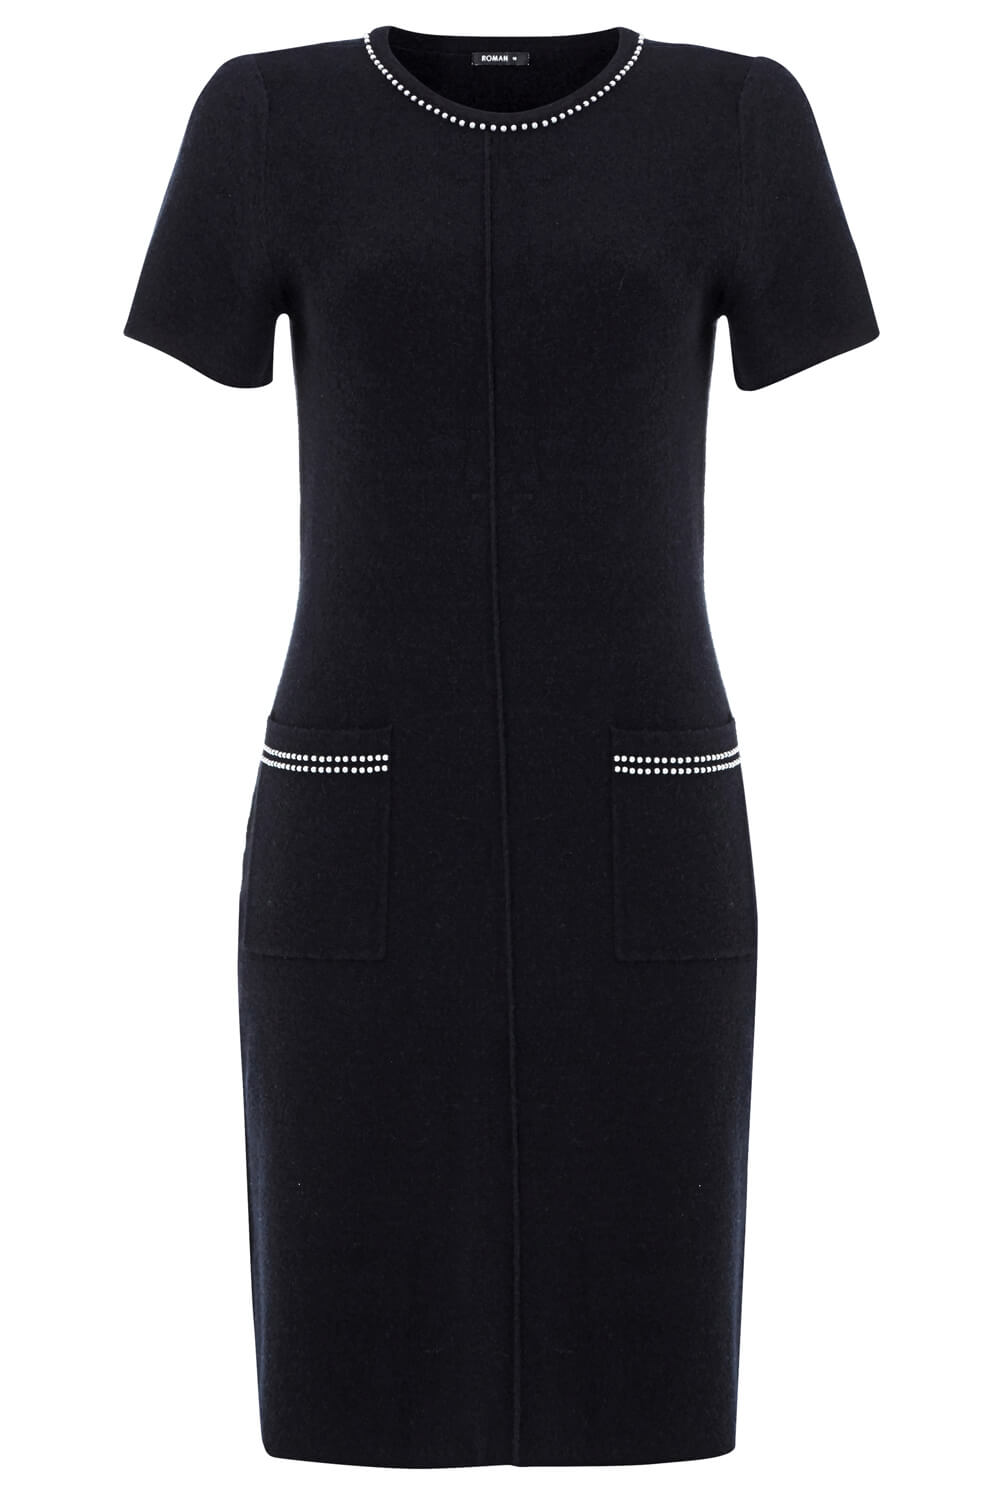 Black Pearl Embellished Short Sleeve Dress, Image 5 of 5